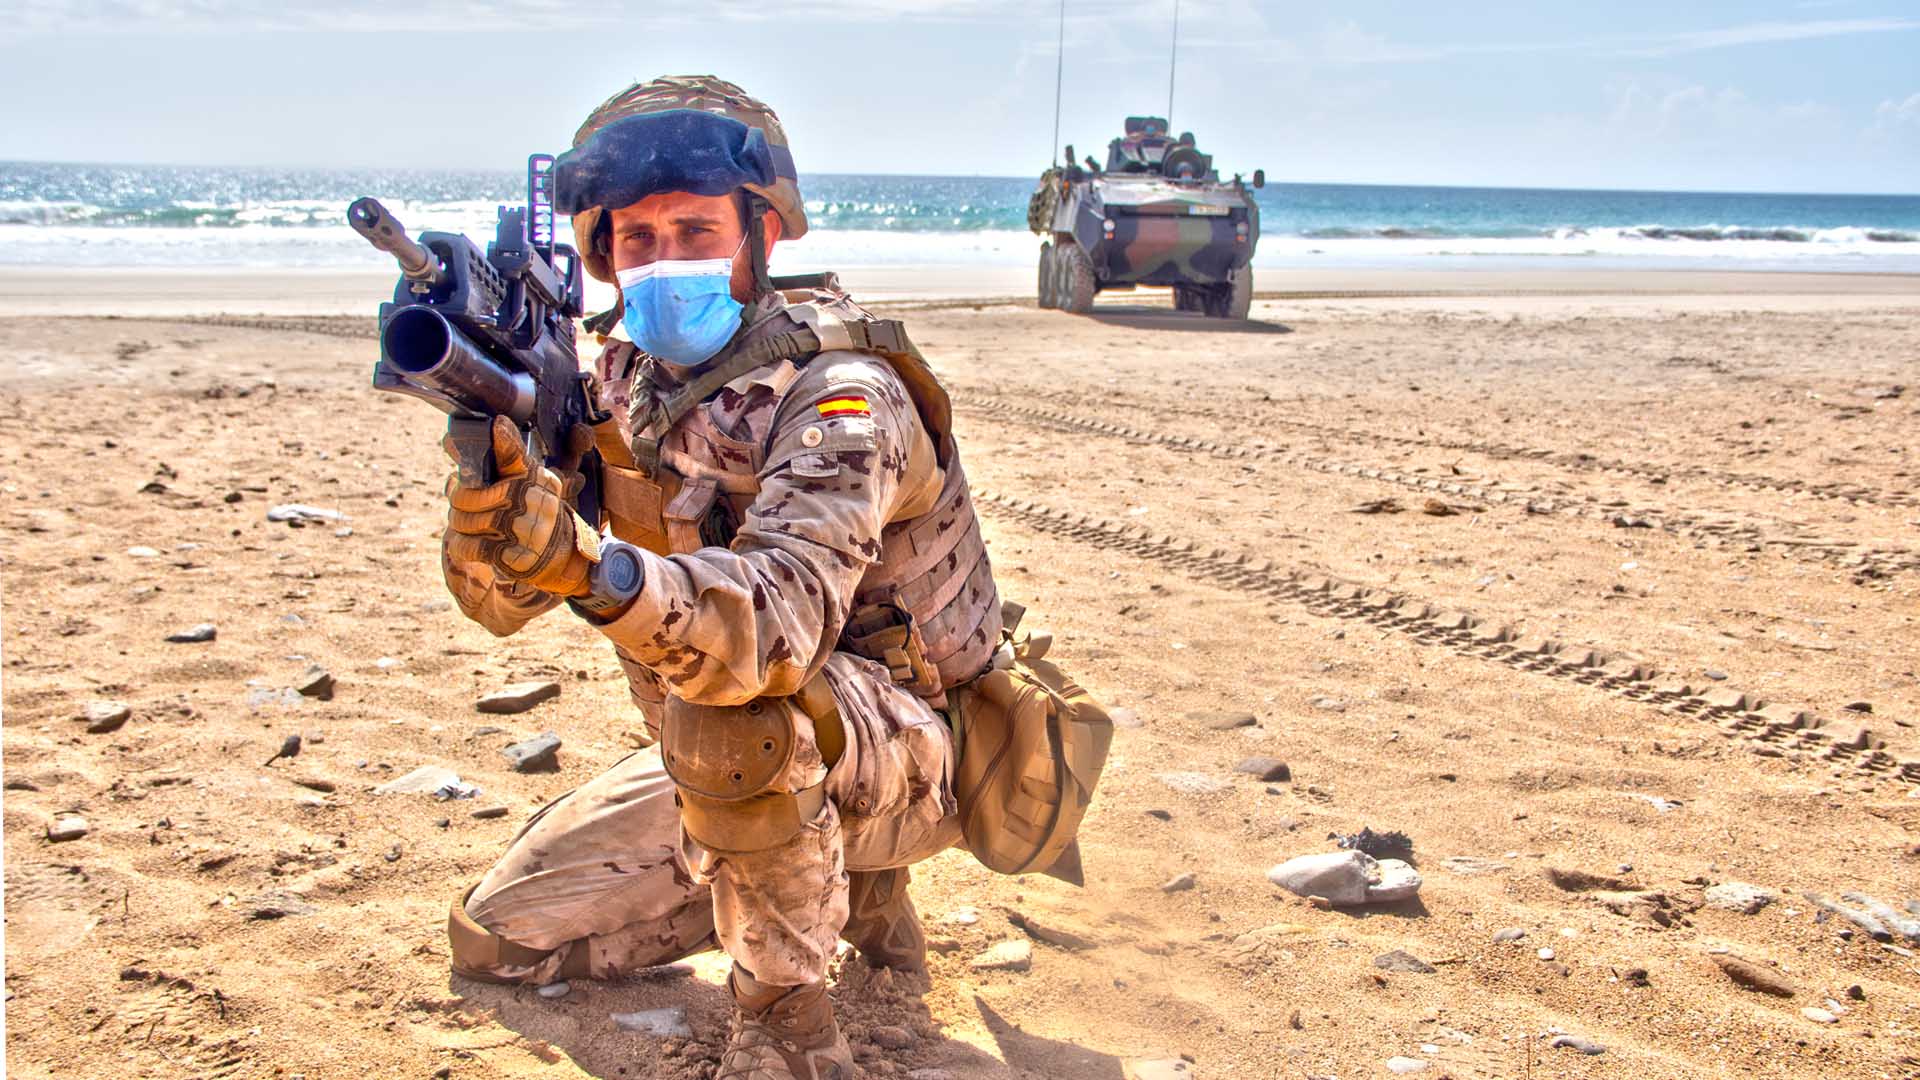 Potencia de fuego y puño de hierro: así se prepara el Batallón Mecanizado de Infantería de Marina